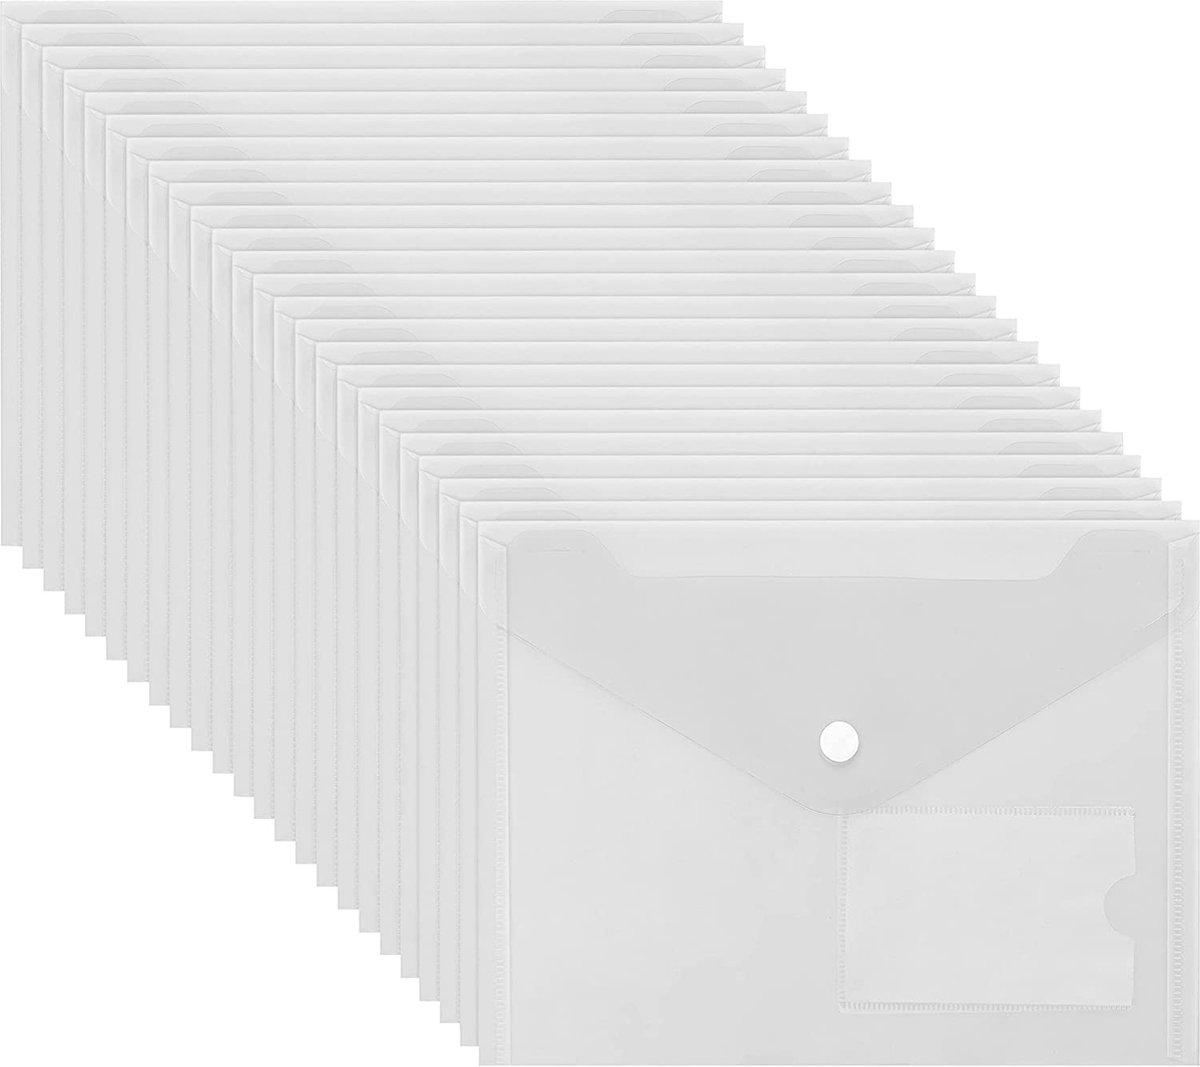 Belle Vous A5 Doorzichtig Plastic Mappen (24 Pak) – Poly File Mappen met Druk Knop Sluiting en Kaart Label Buideltje – Huis, Kantoor & School Organisatie – Papierwerk, Document, Recept & Envelop Map - BELLE VOUS